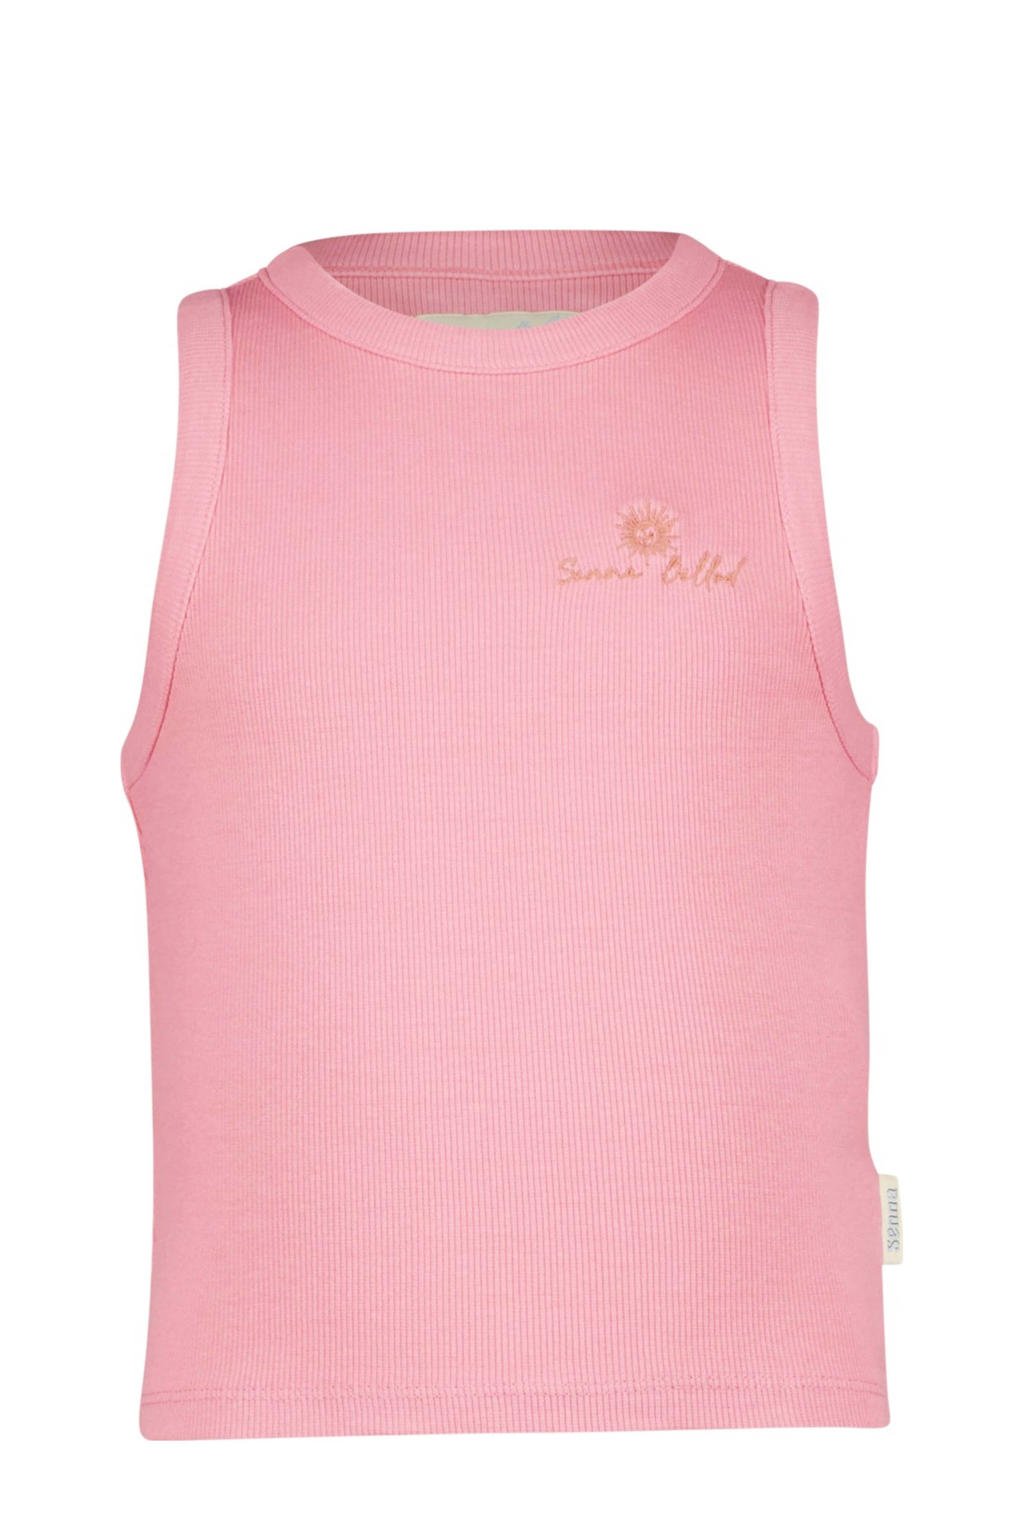 Roze meisjes Vingino x Senna Bellod T-shirt van katoen met korte mouwen en ronde hals